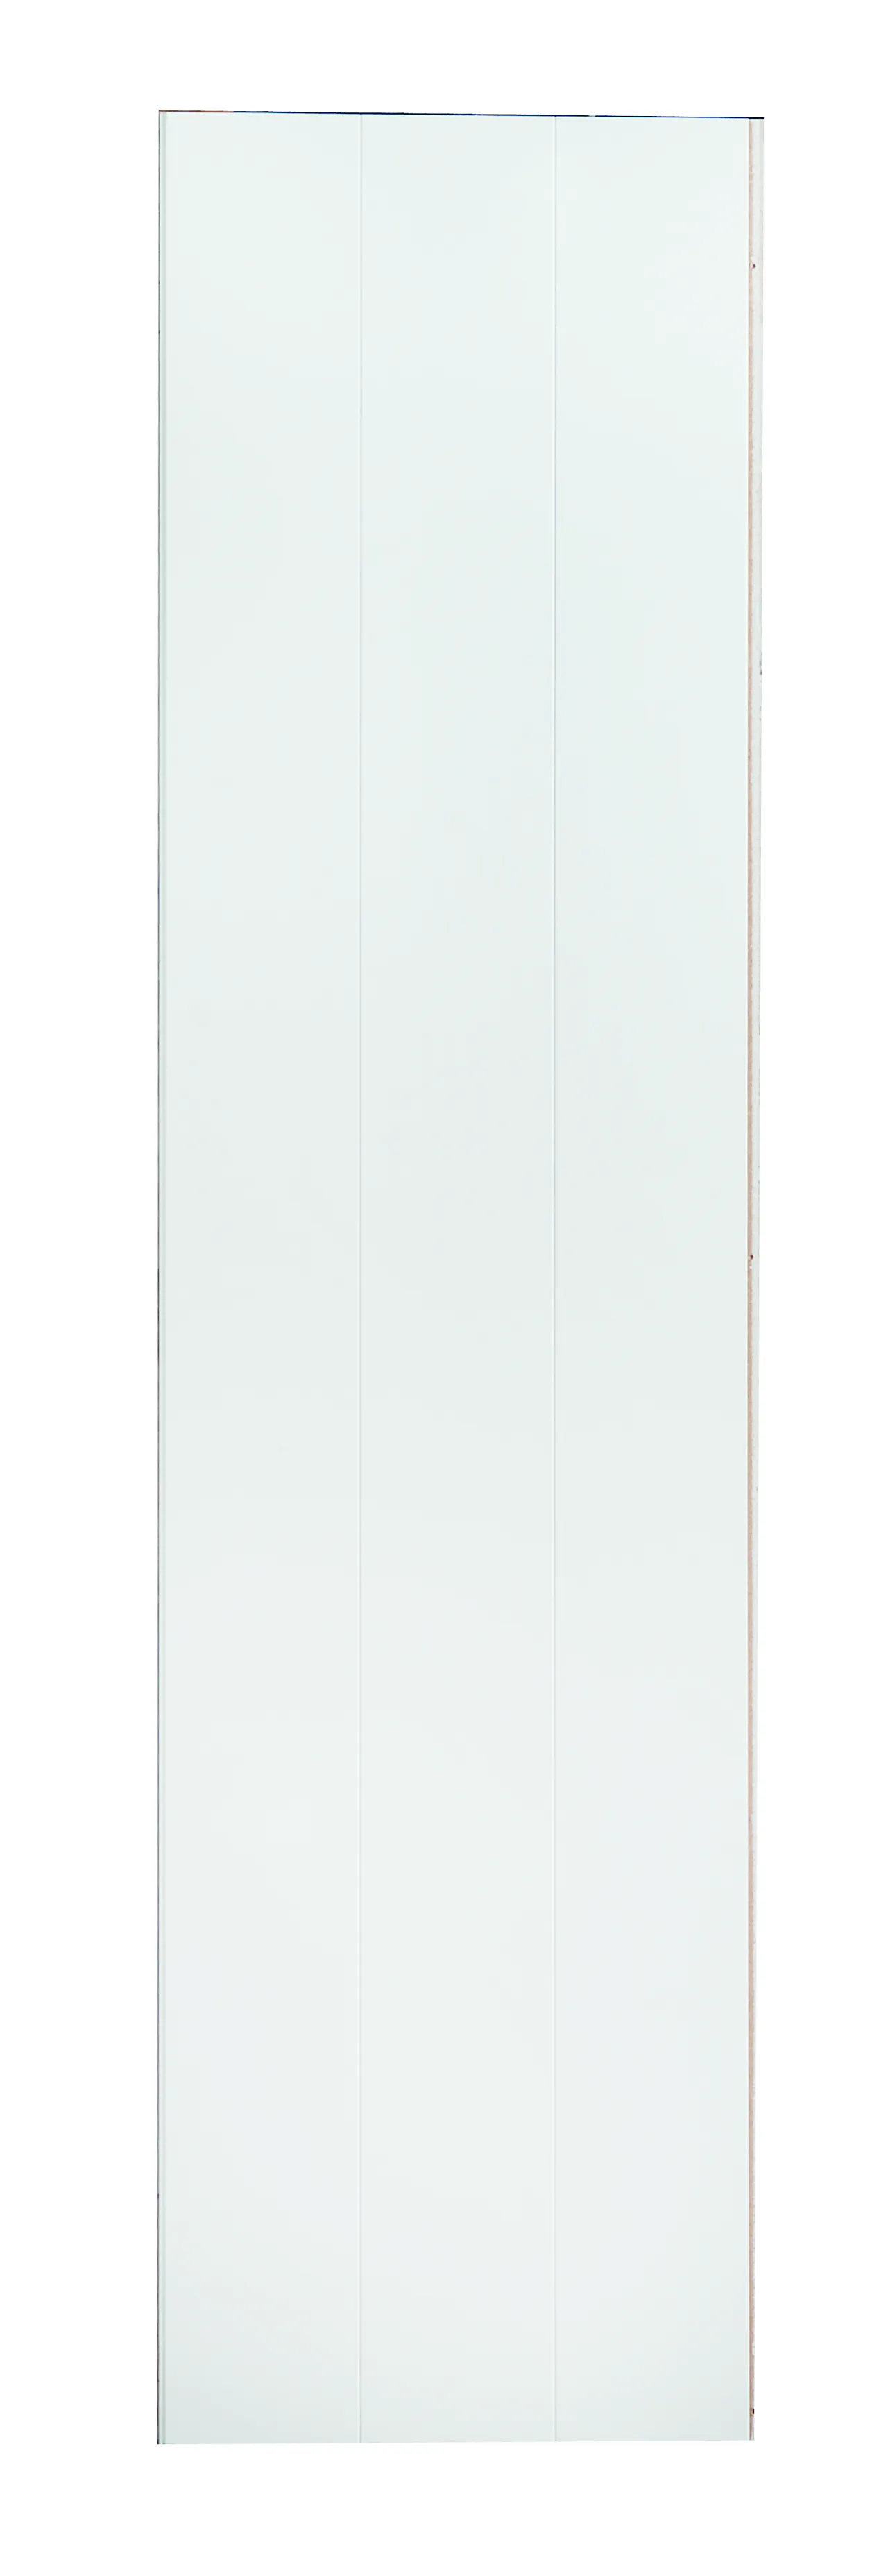 Veggplate i trefiber 3-bord hvit 11x620x2390 mm null - null - 3